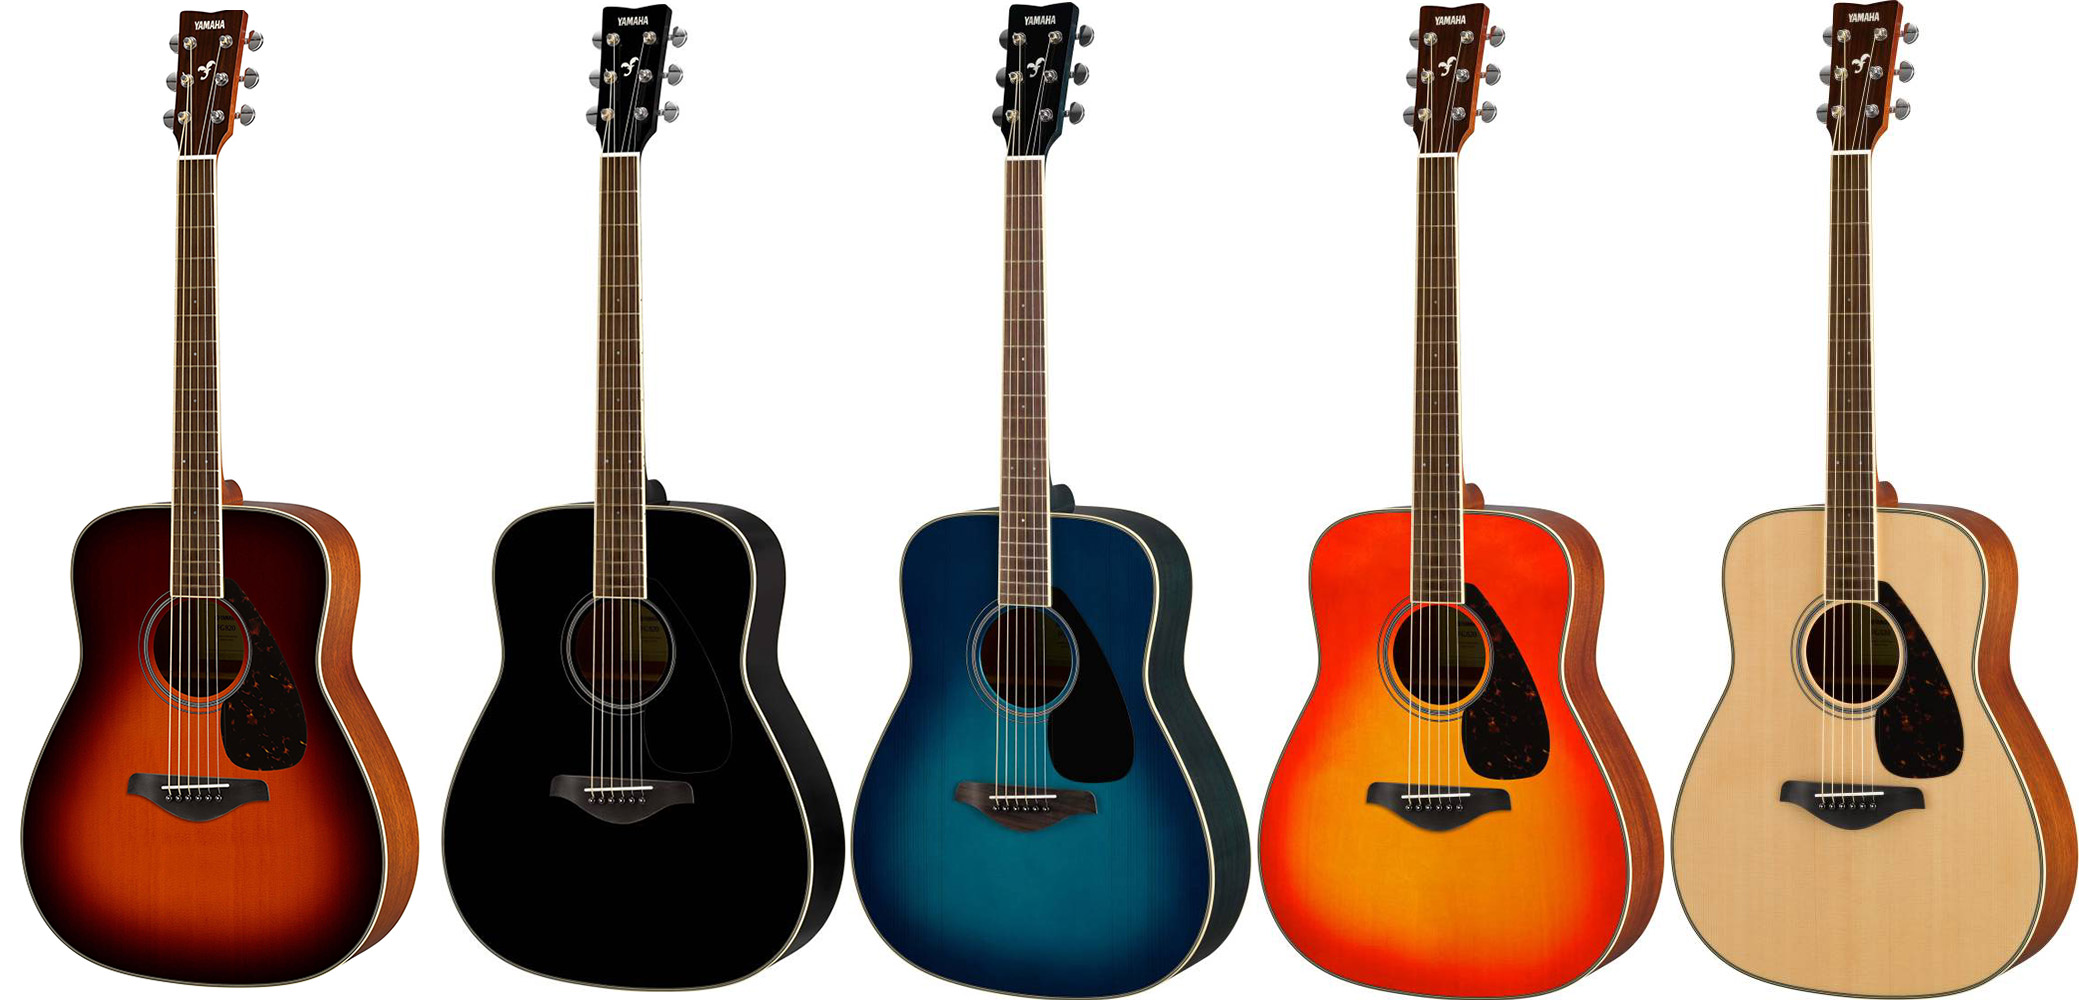 گیتار آکوستیک یاماها/ رنگ بندی گیتار آکوستیک یاماها مدل FG-820